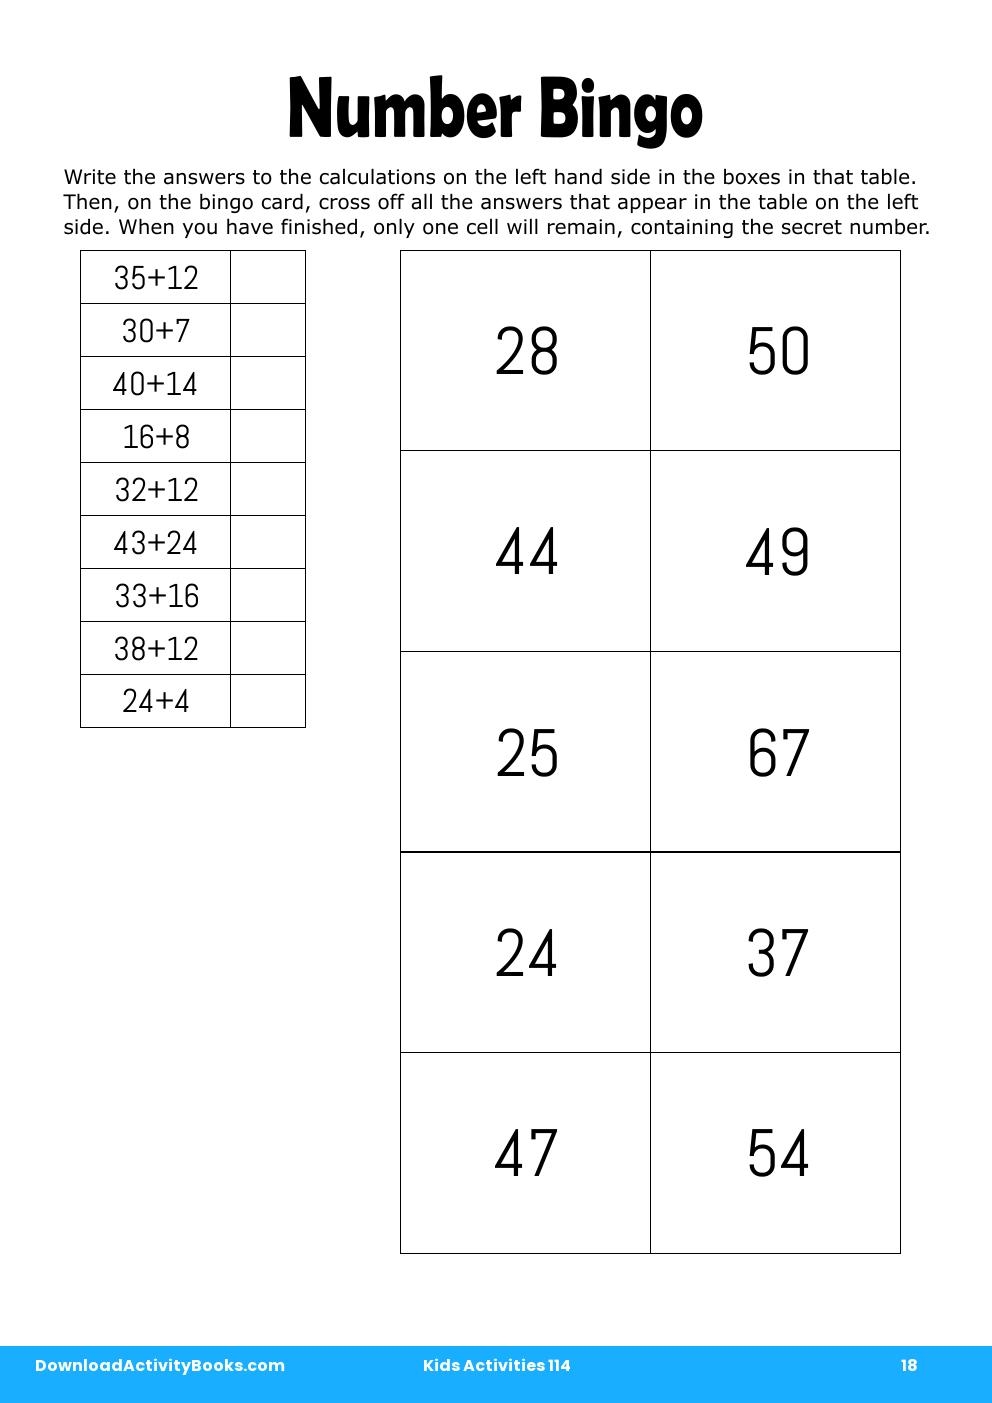 Number Bingo in Kids Activities 114